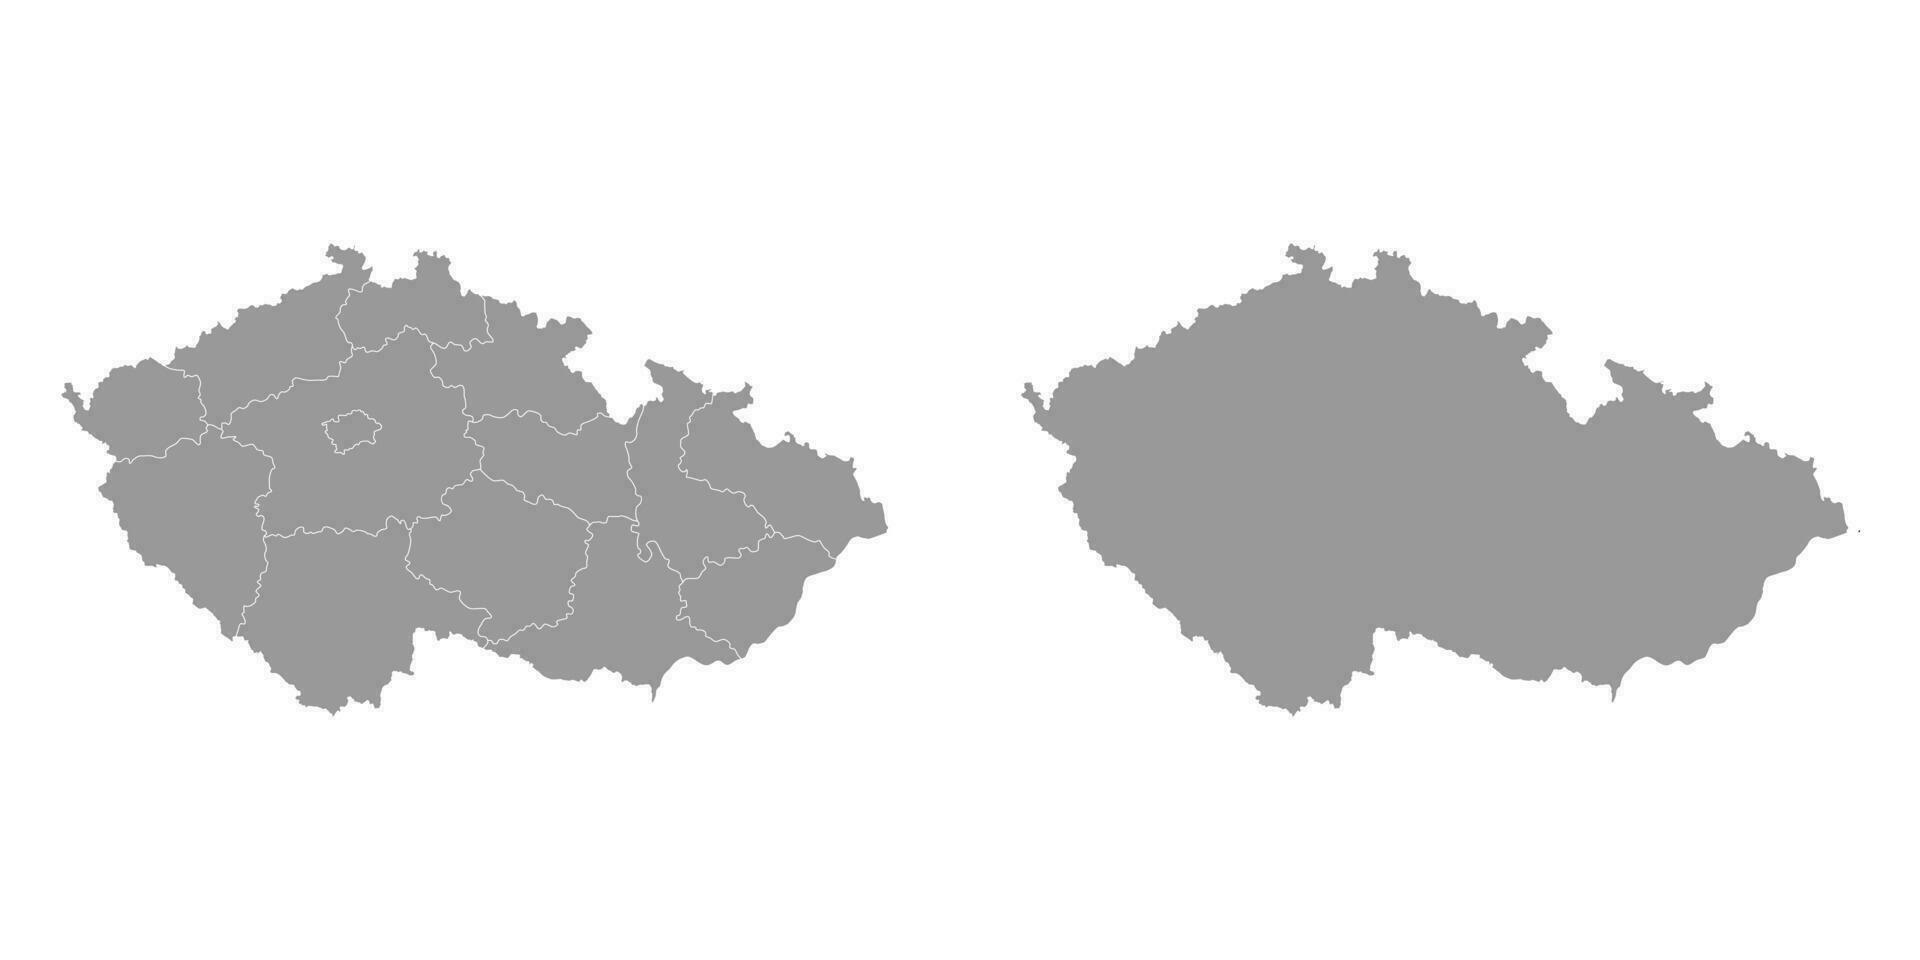 ceco repubblica grigio carta geografica con regioni. vettore illustrazione.